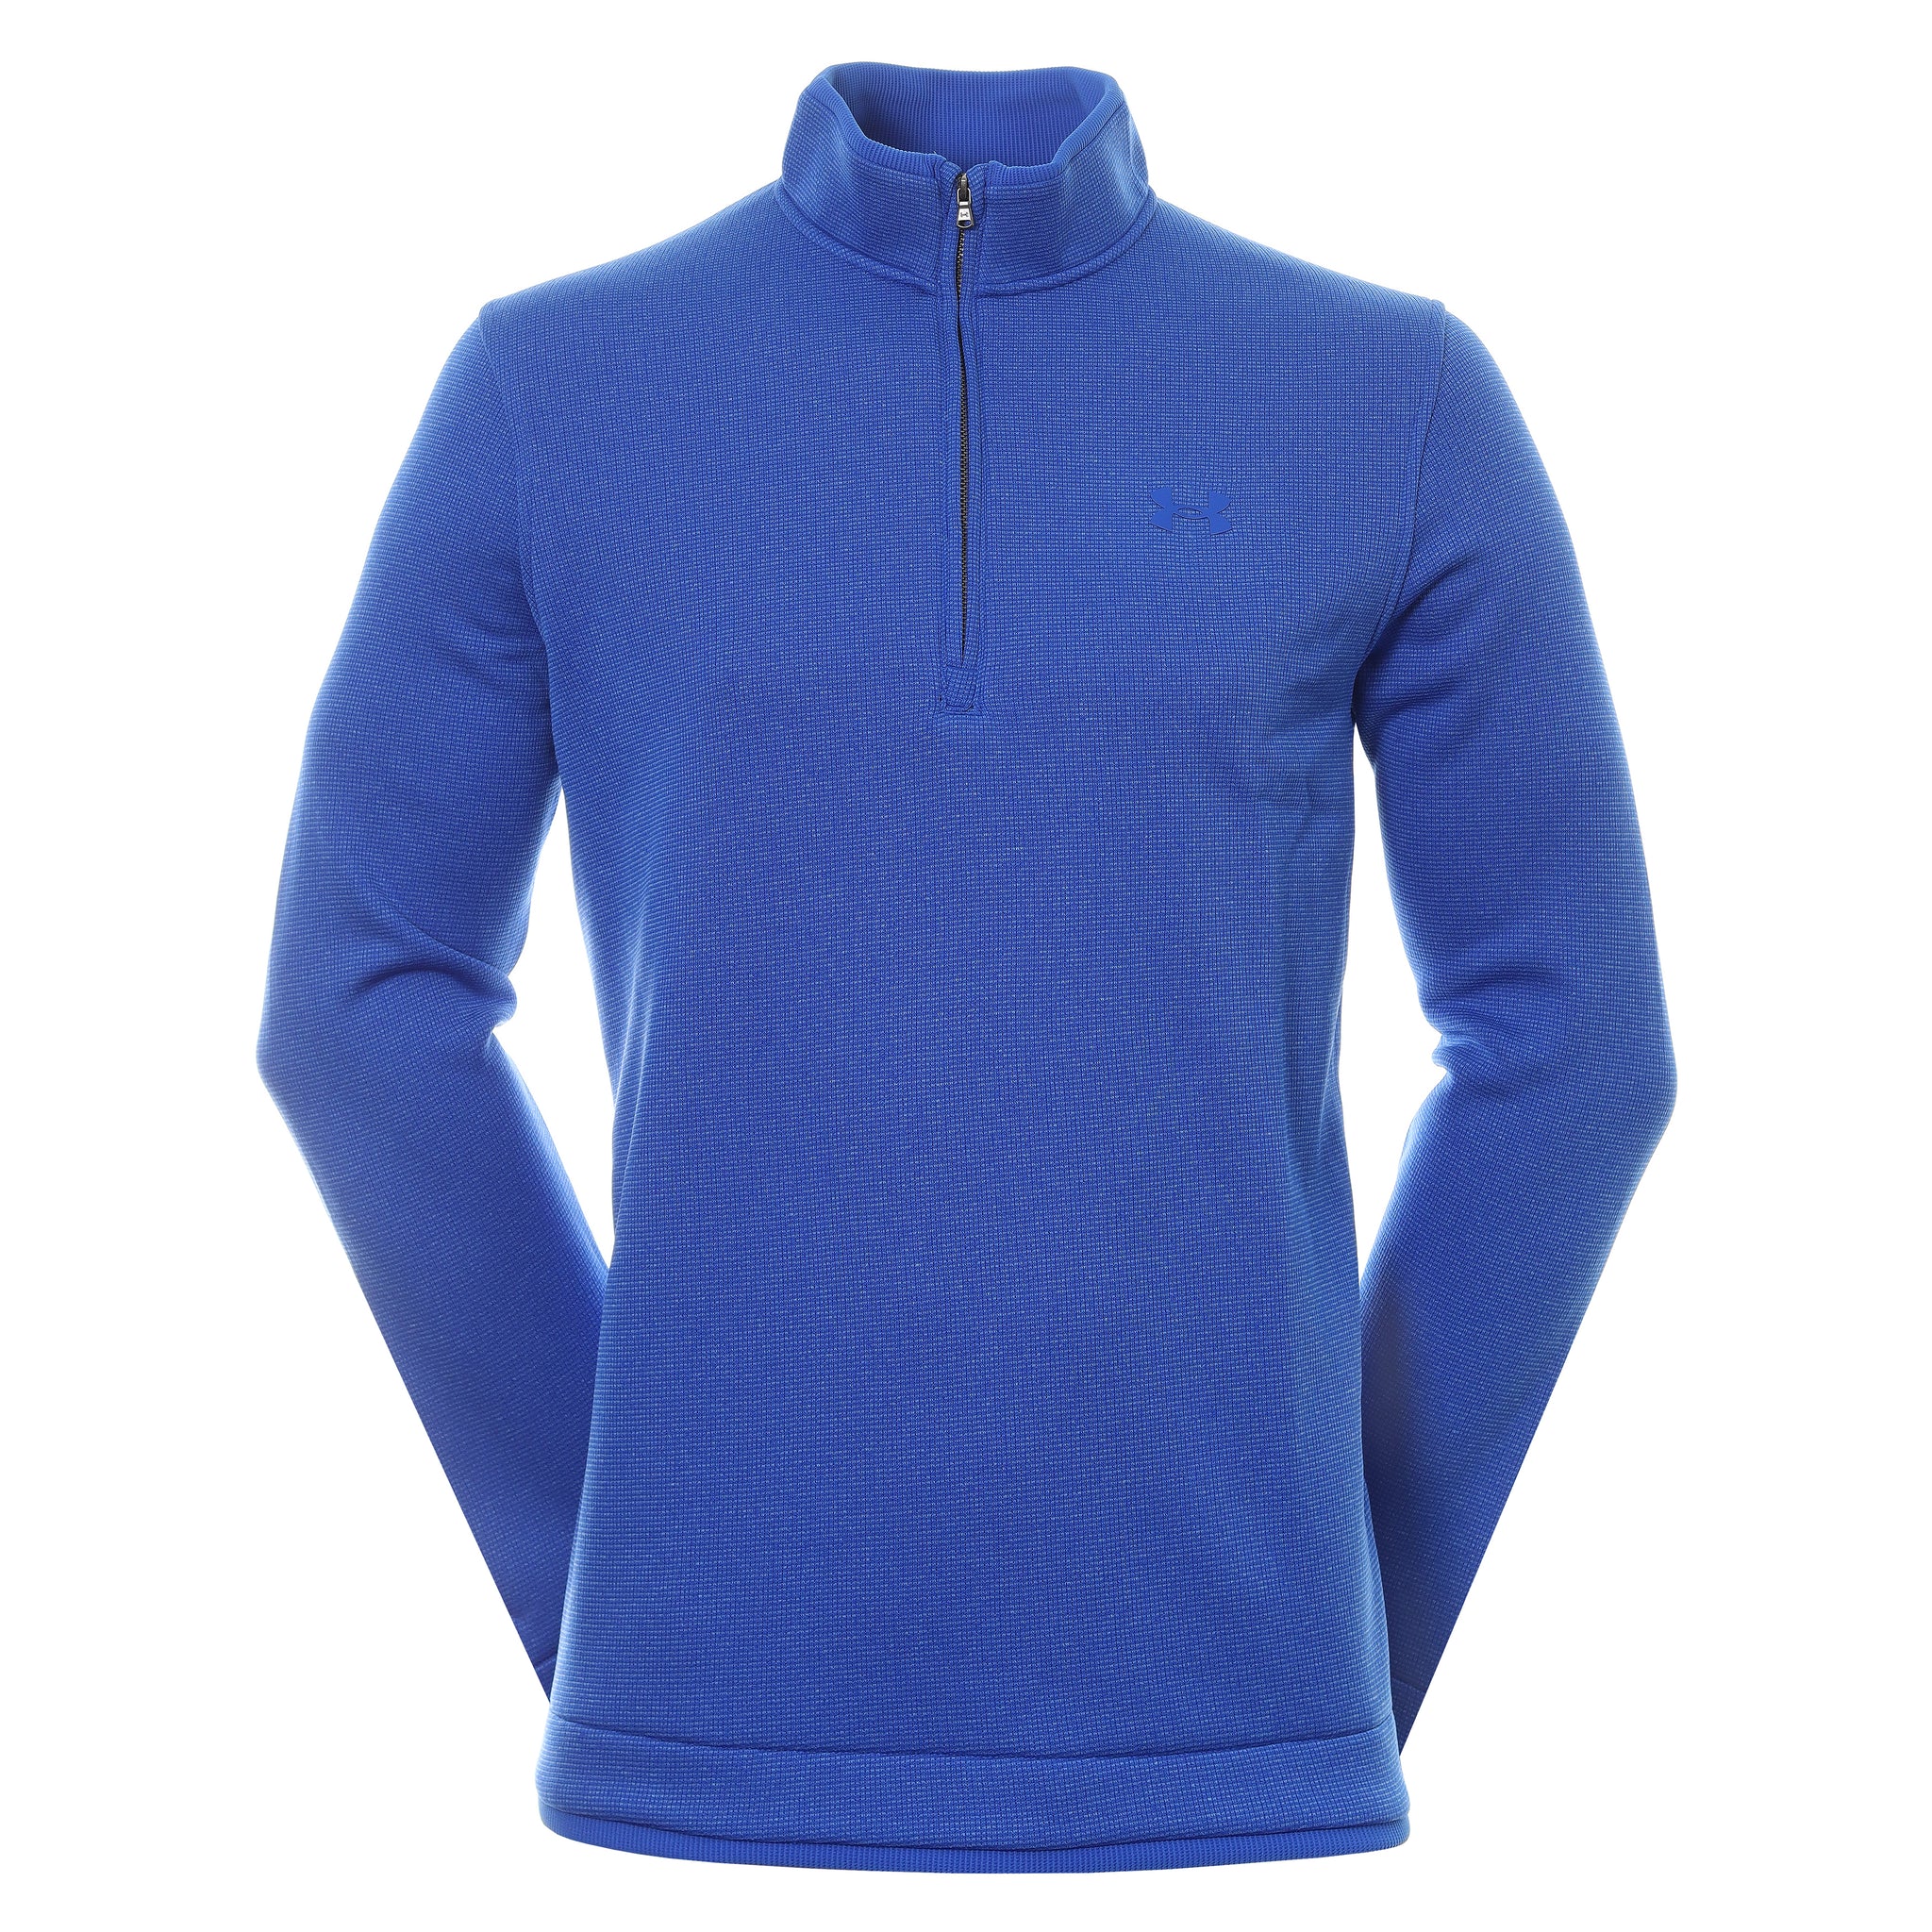 UA | 1359971 | Storm Sweater Fleece 1/2 Zip | Versa Blue / Versa Blue